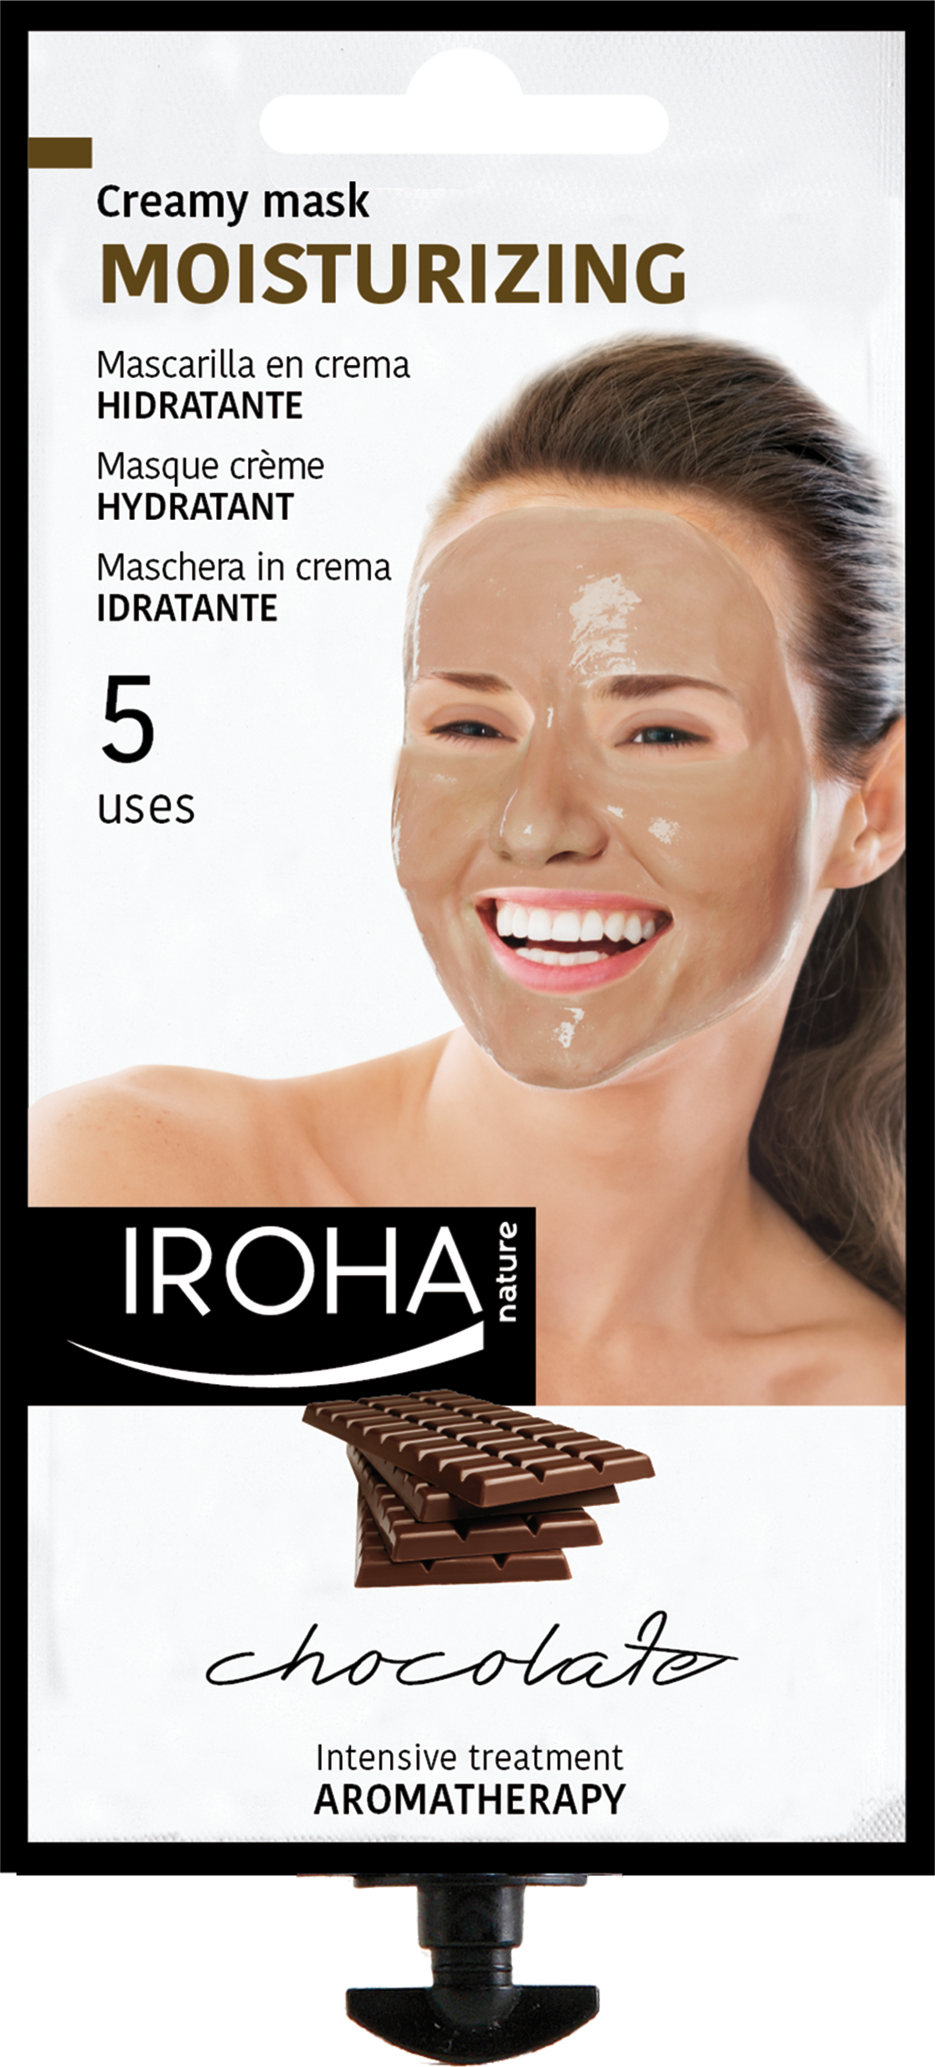 MOISTURIZING face Mask - Chocolate.